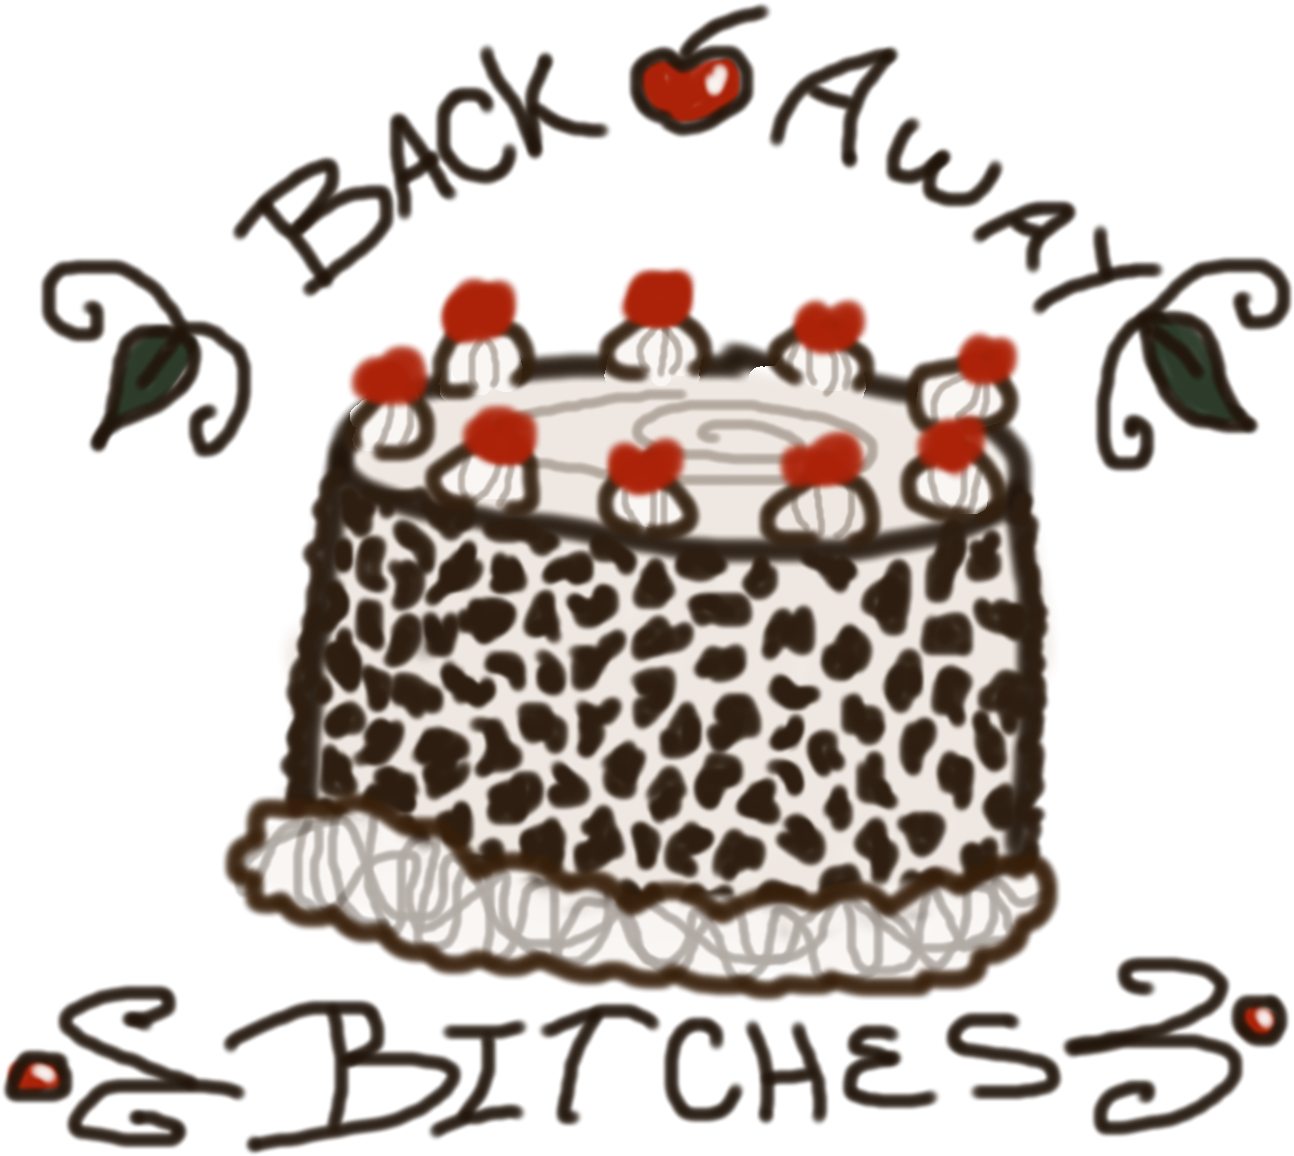 Cake 782 Kb - Birthday Cake (1600x1200), Png Download